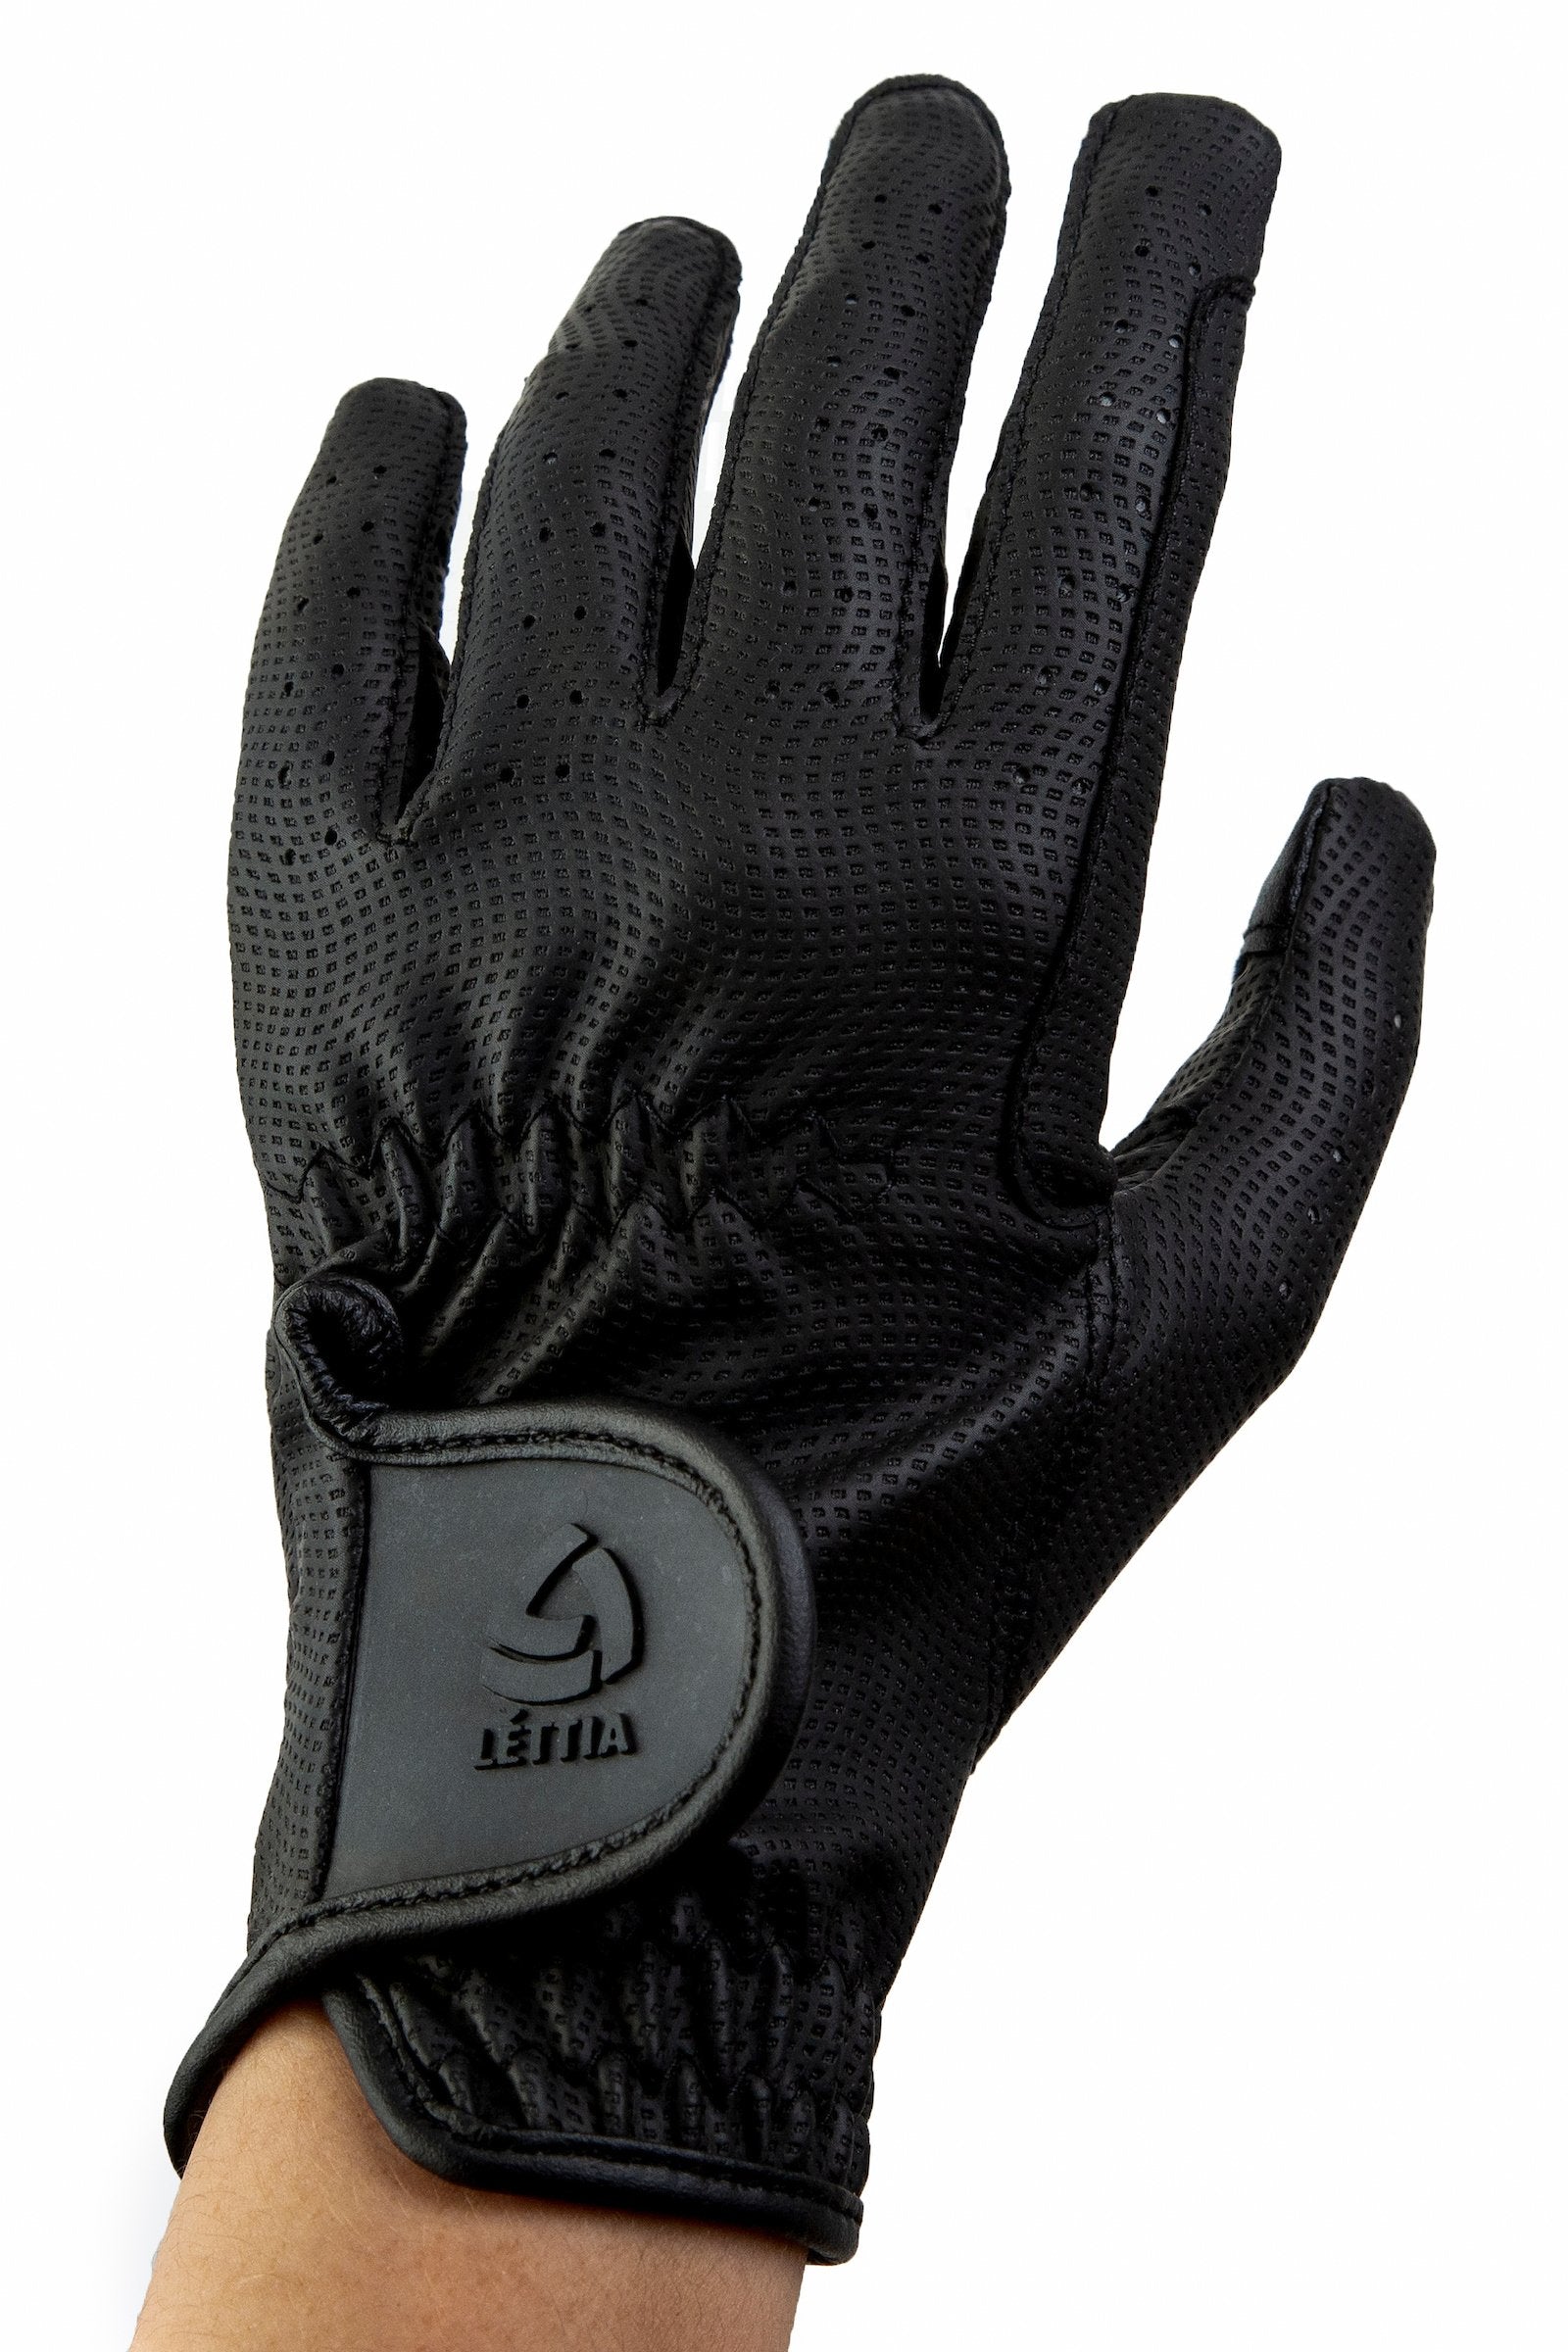 Lettia Ladies Capri Glove